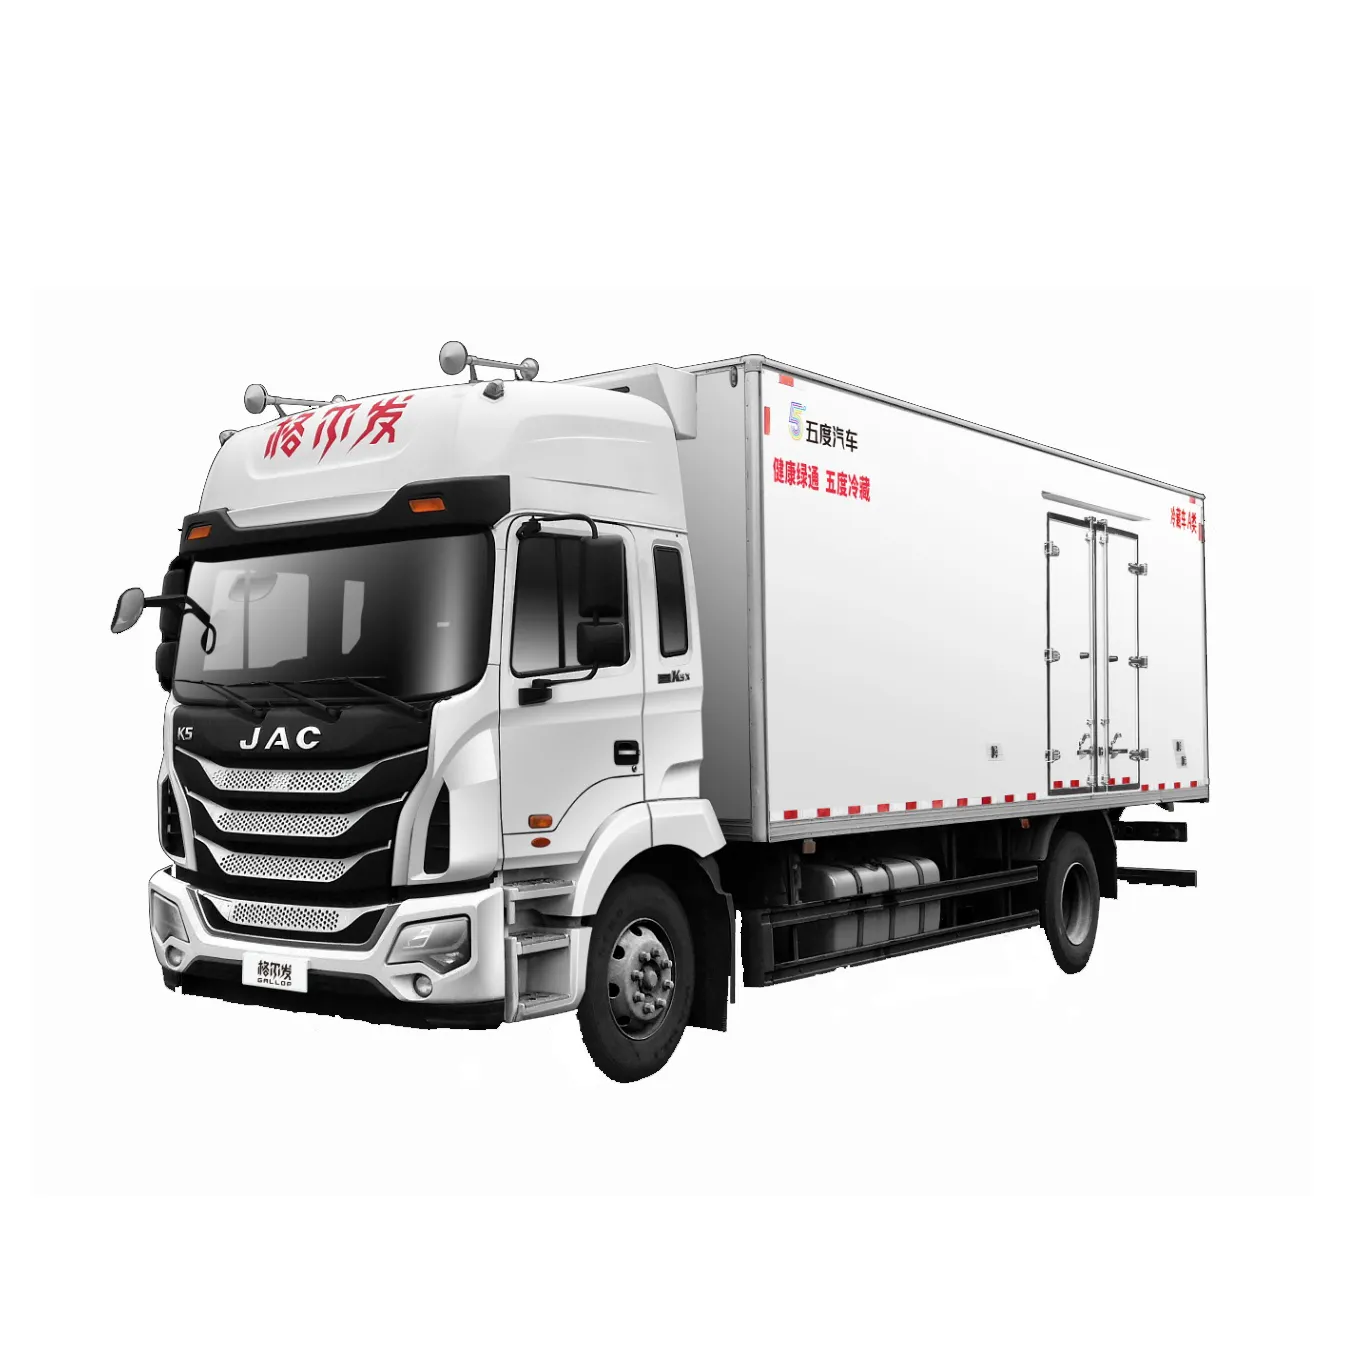 Jc — camion-réfrigérateur de viande, 10 tonnes, 4x2, 6.8m, chariot de refroidissement, nouveau Design, à vendre, livraison gratuite